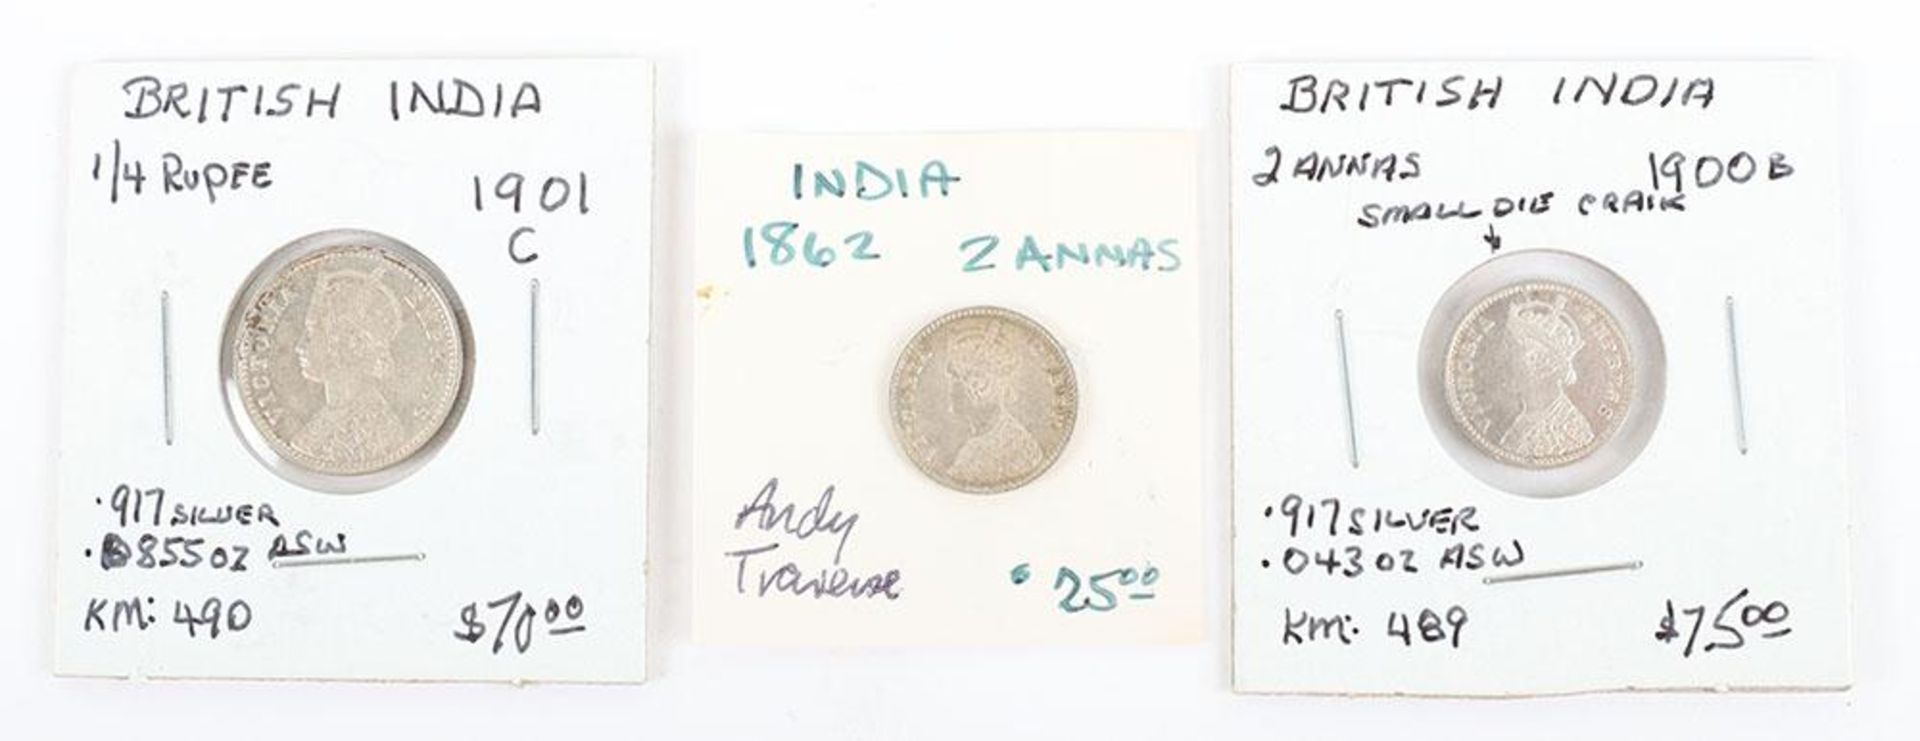 British India, Victoria, 1862 2 Annas, 1901C Quarter Rupee and 1900B 2 Annas